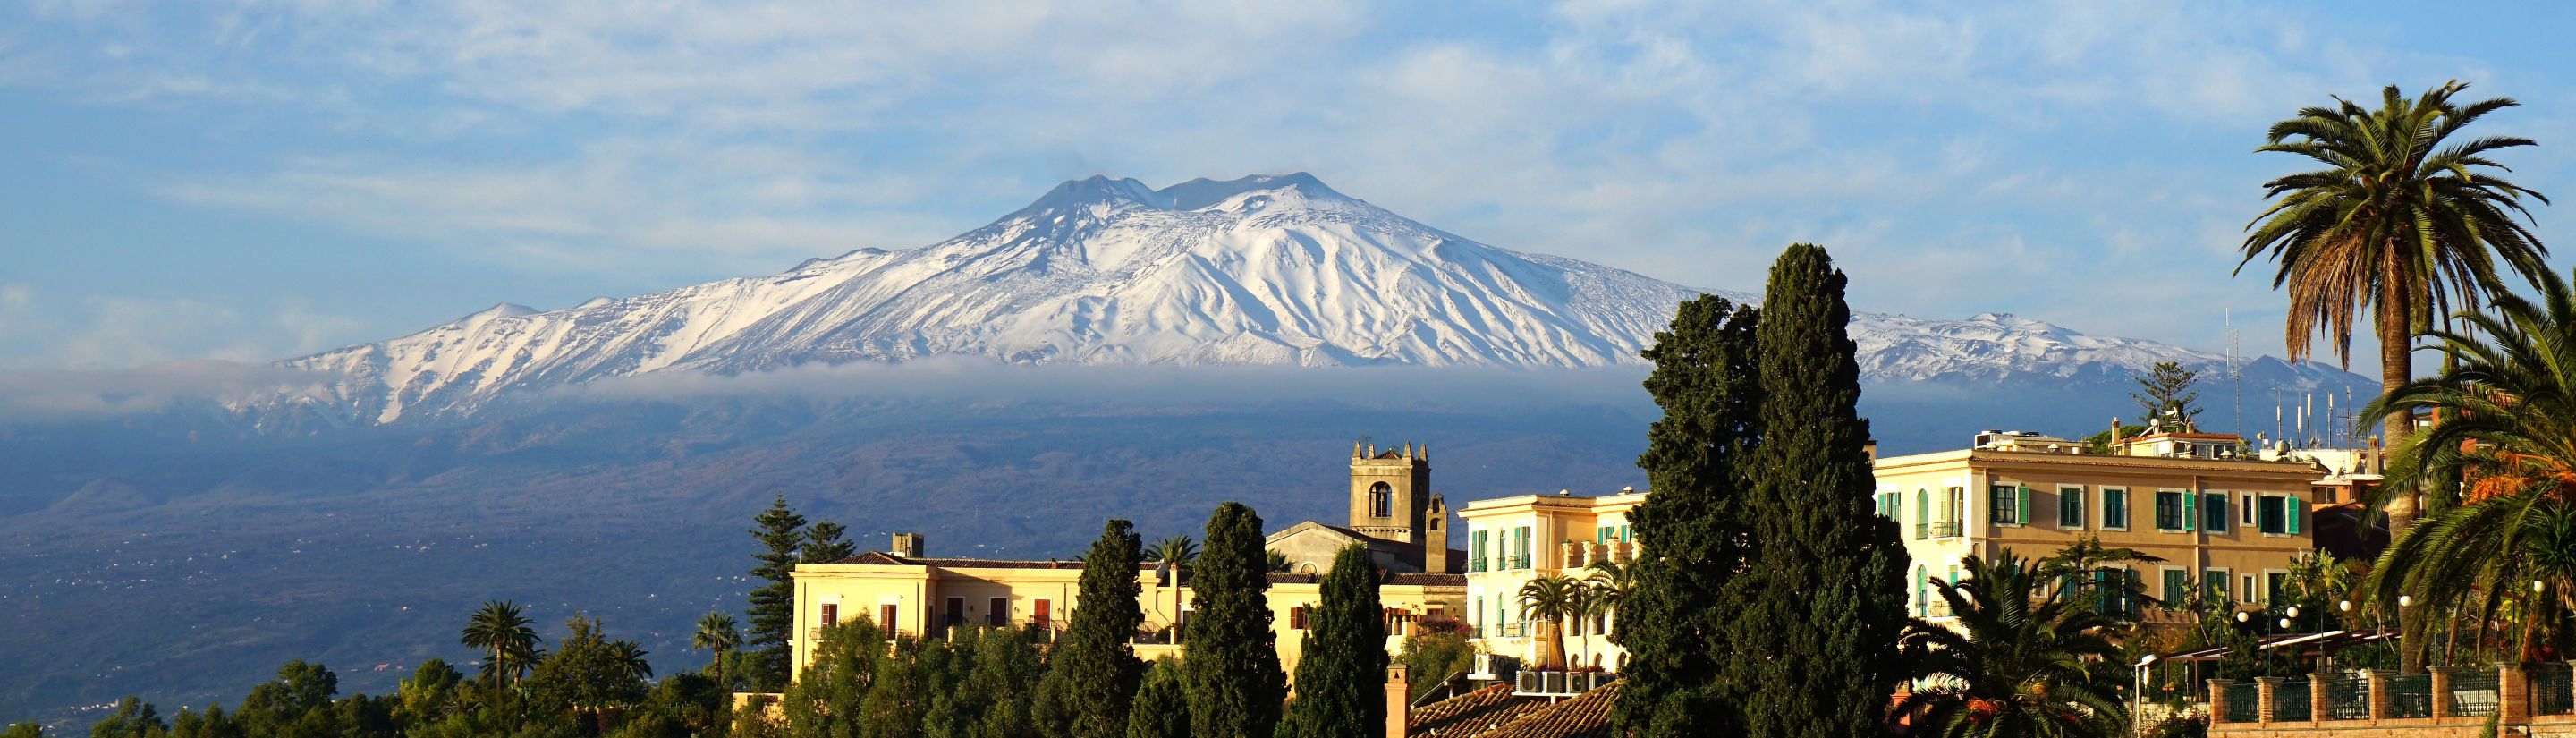 Vulkane auf Sizilien